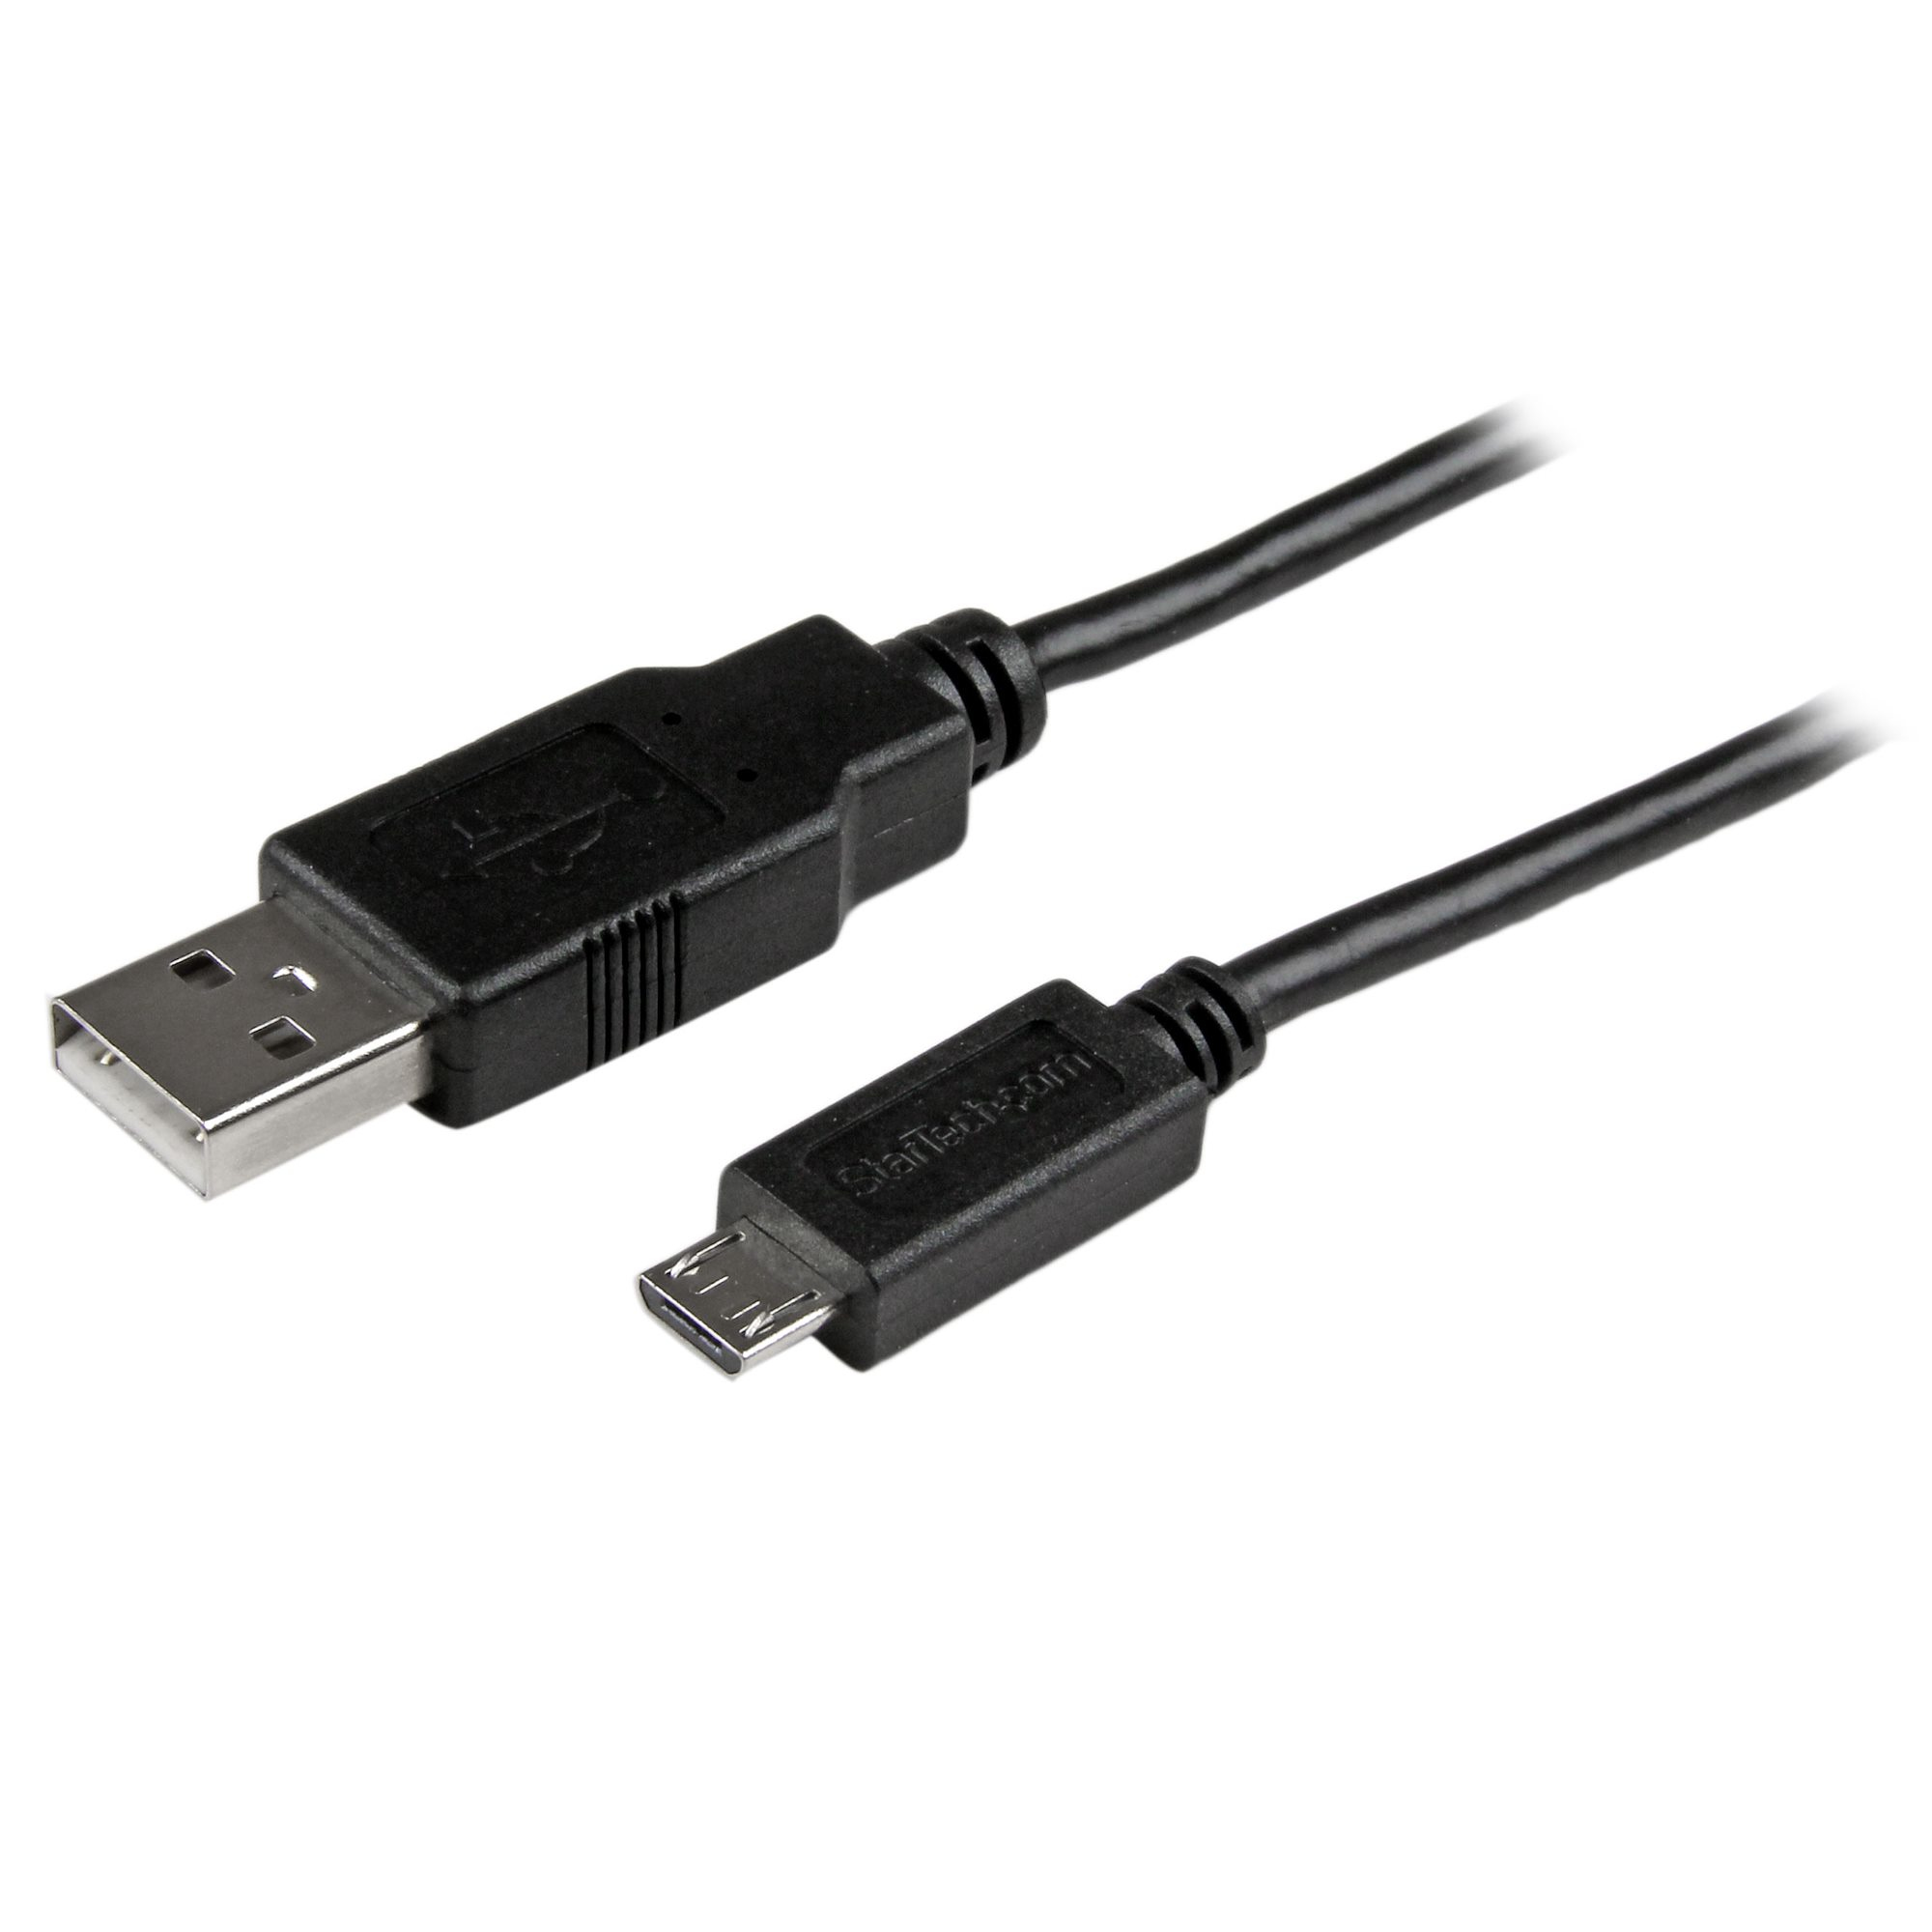 Photos - Cable (video, audio, USB) Startech.com Short Micro-USB Cable - M/M - 0.5m USBAUB50CMBK 